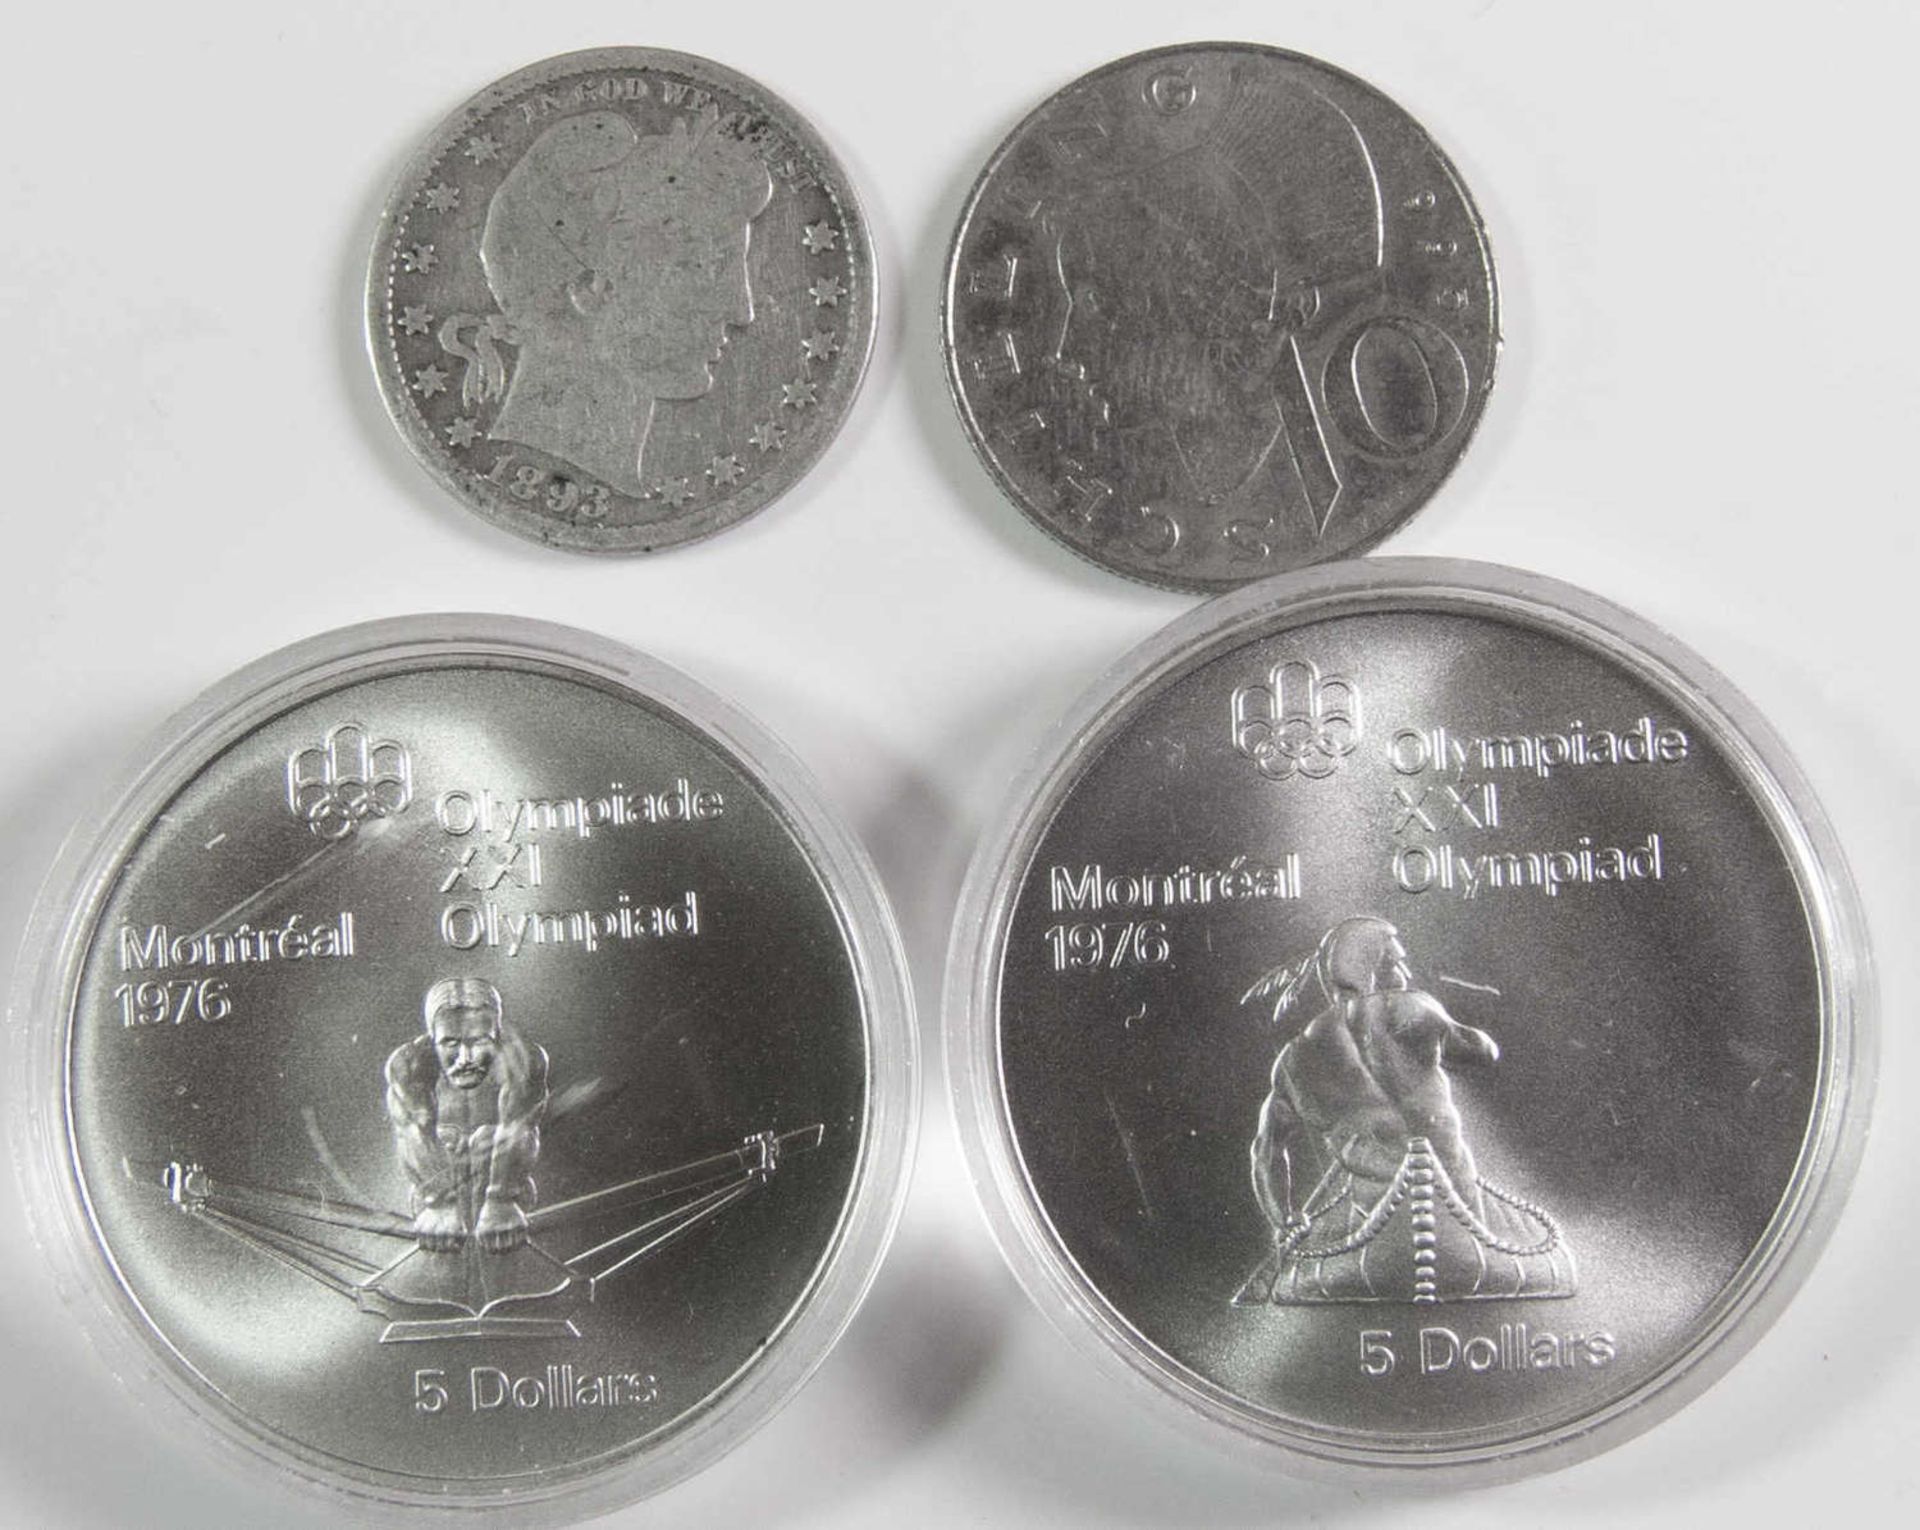 Kanada 1976 2 x 5 Dollar - Silbermünzen, in Kapsel. Dazu USA 1893 Quarter Dollar Barber (seltener